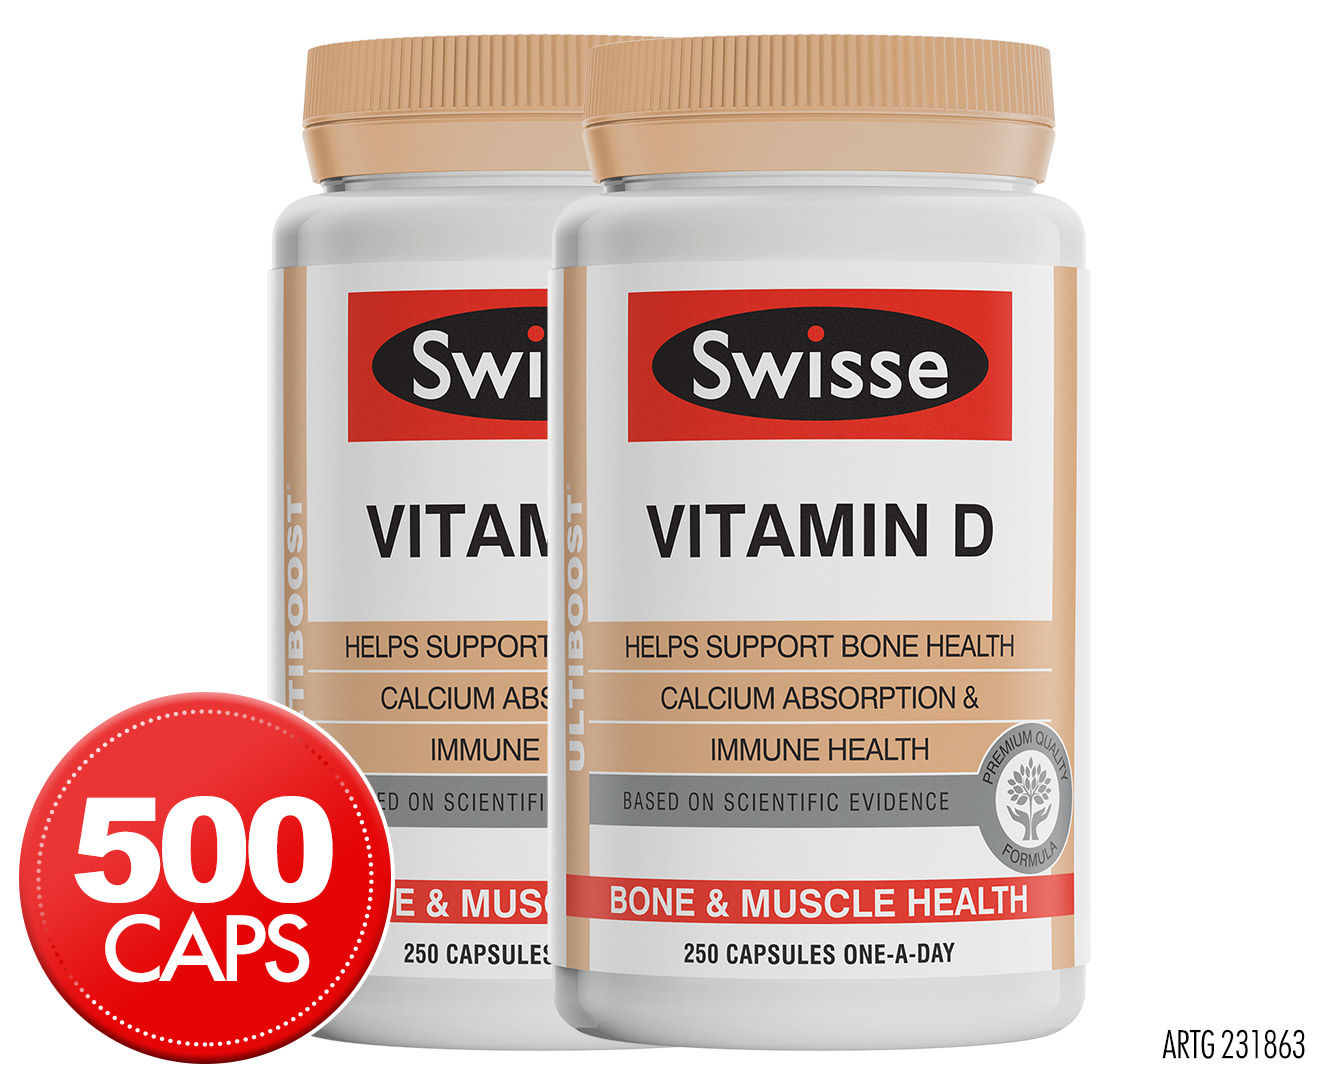 swisse vitamin ultiboost caps pack calcium capsules absorption immune twin